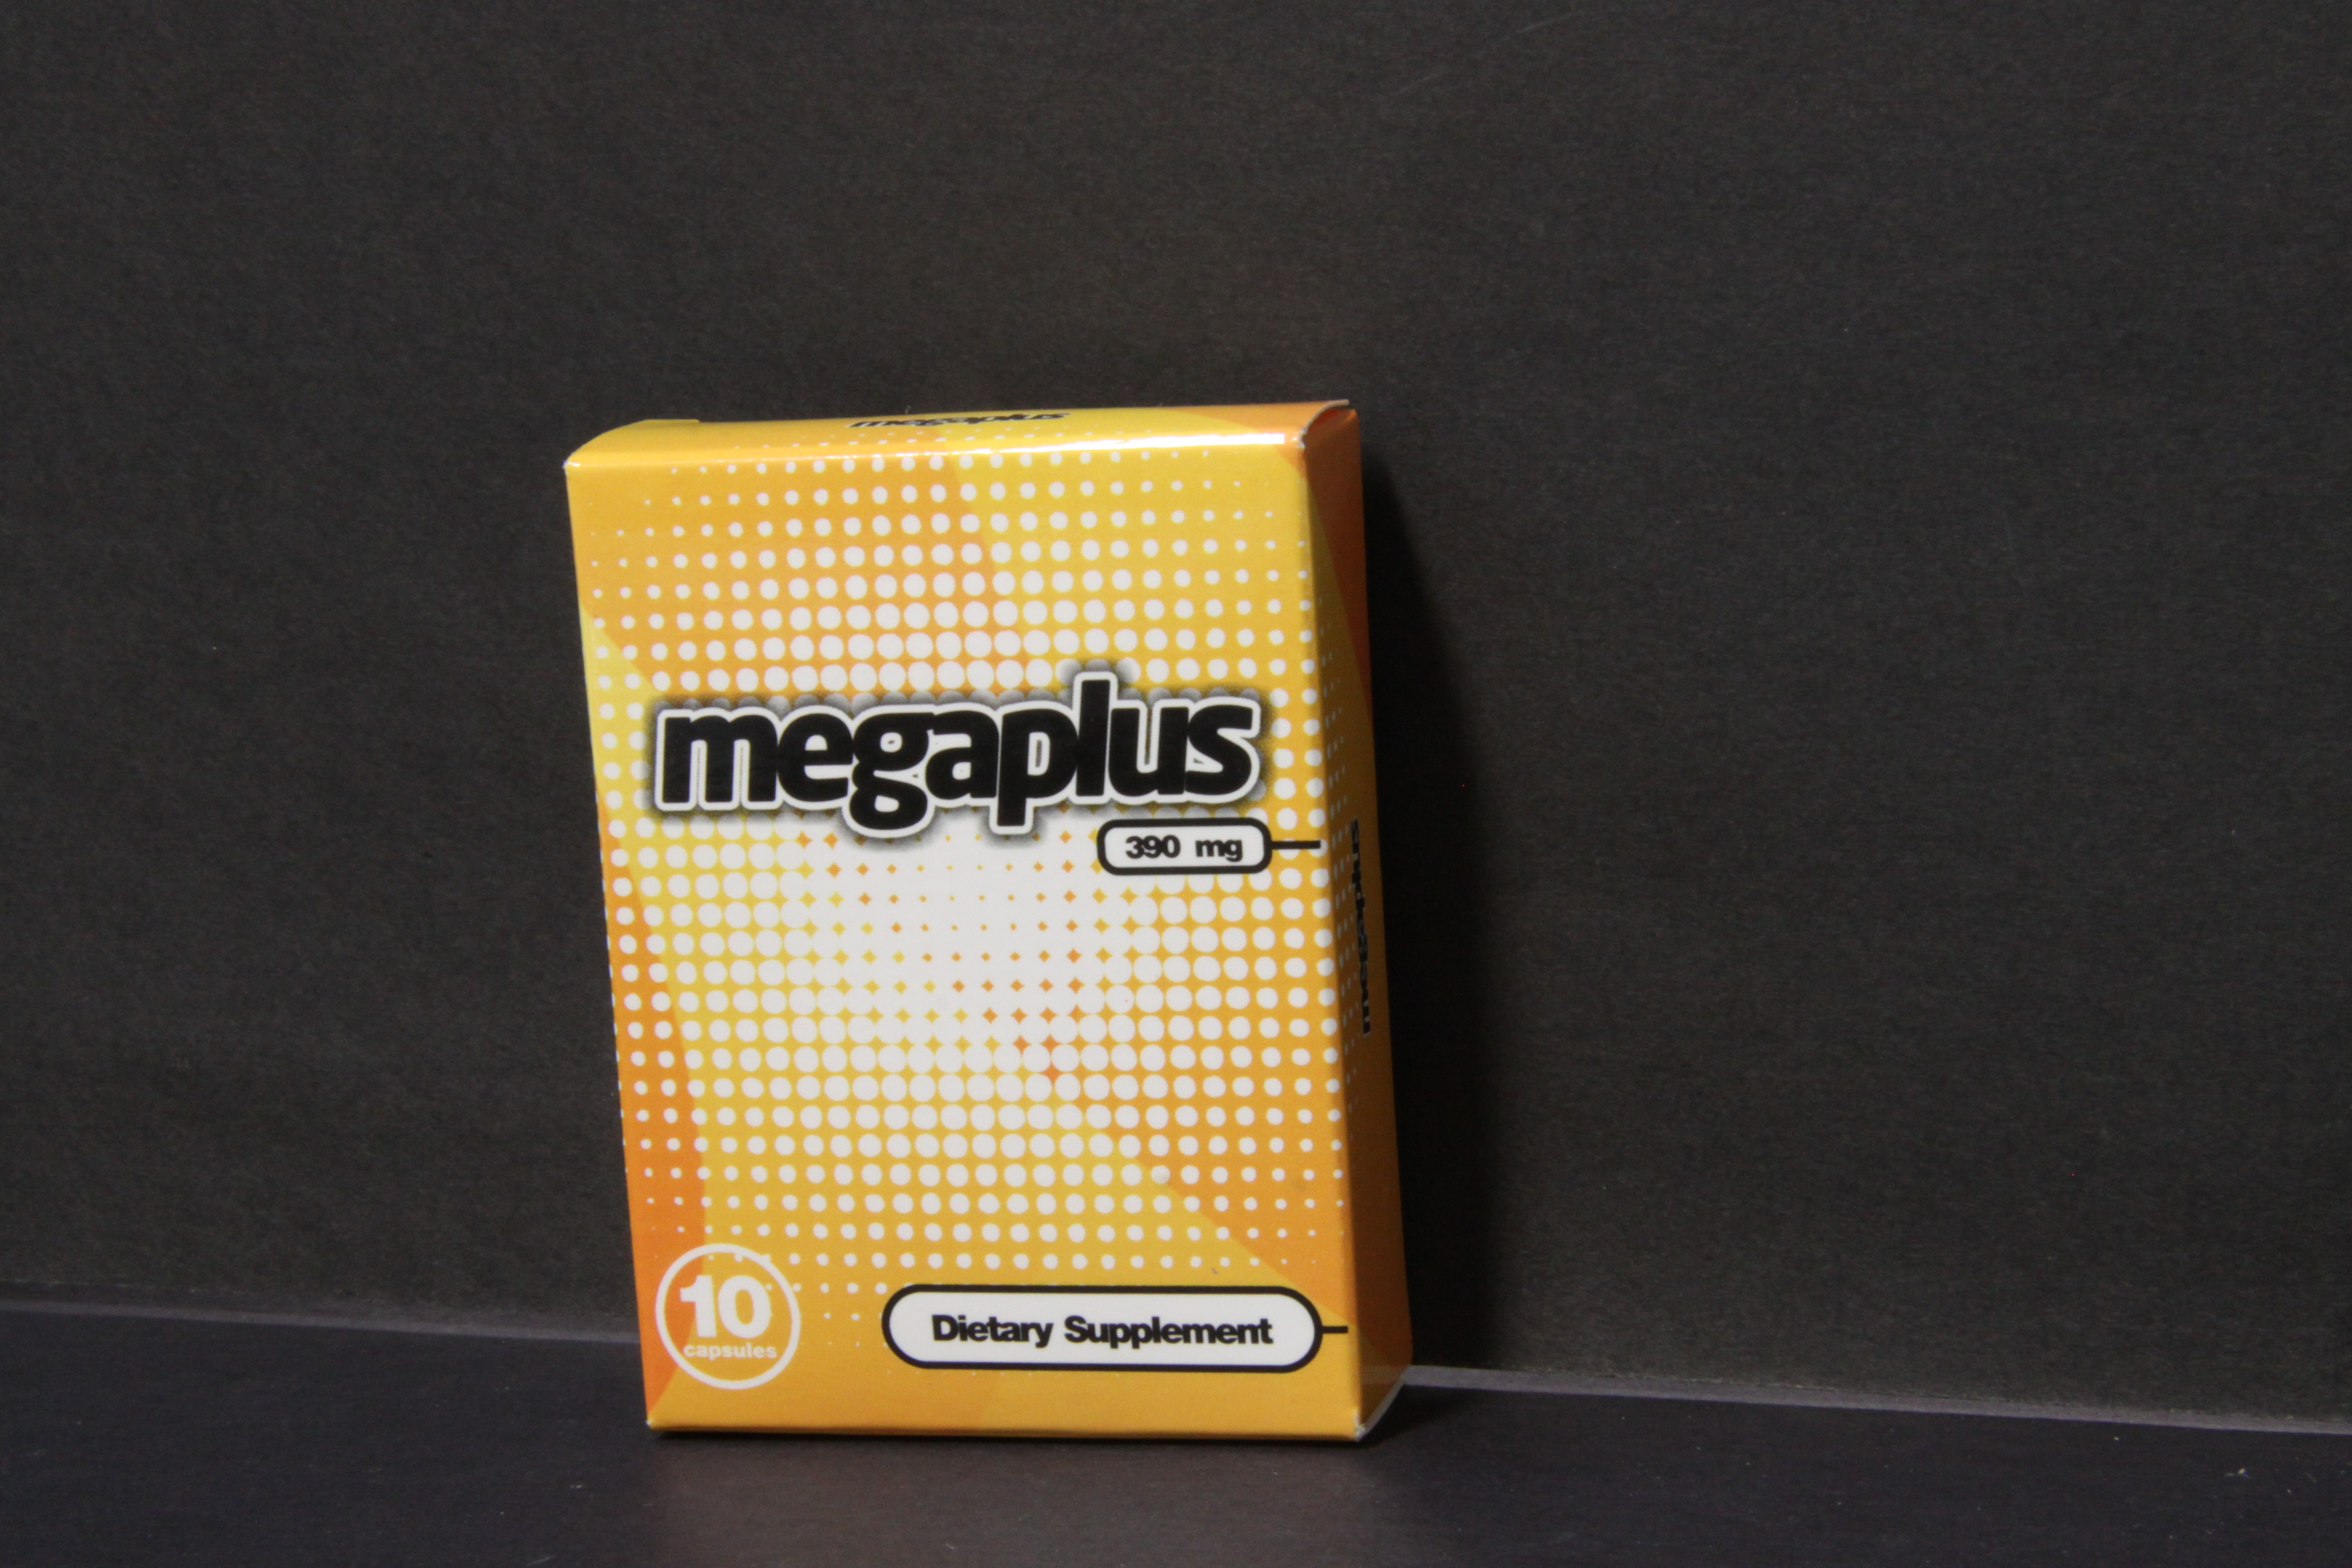 Billede af det ulovlige produkt: Megaplus